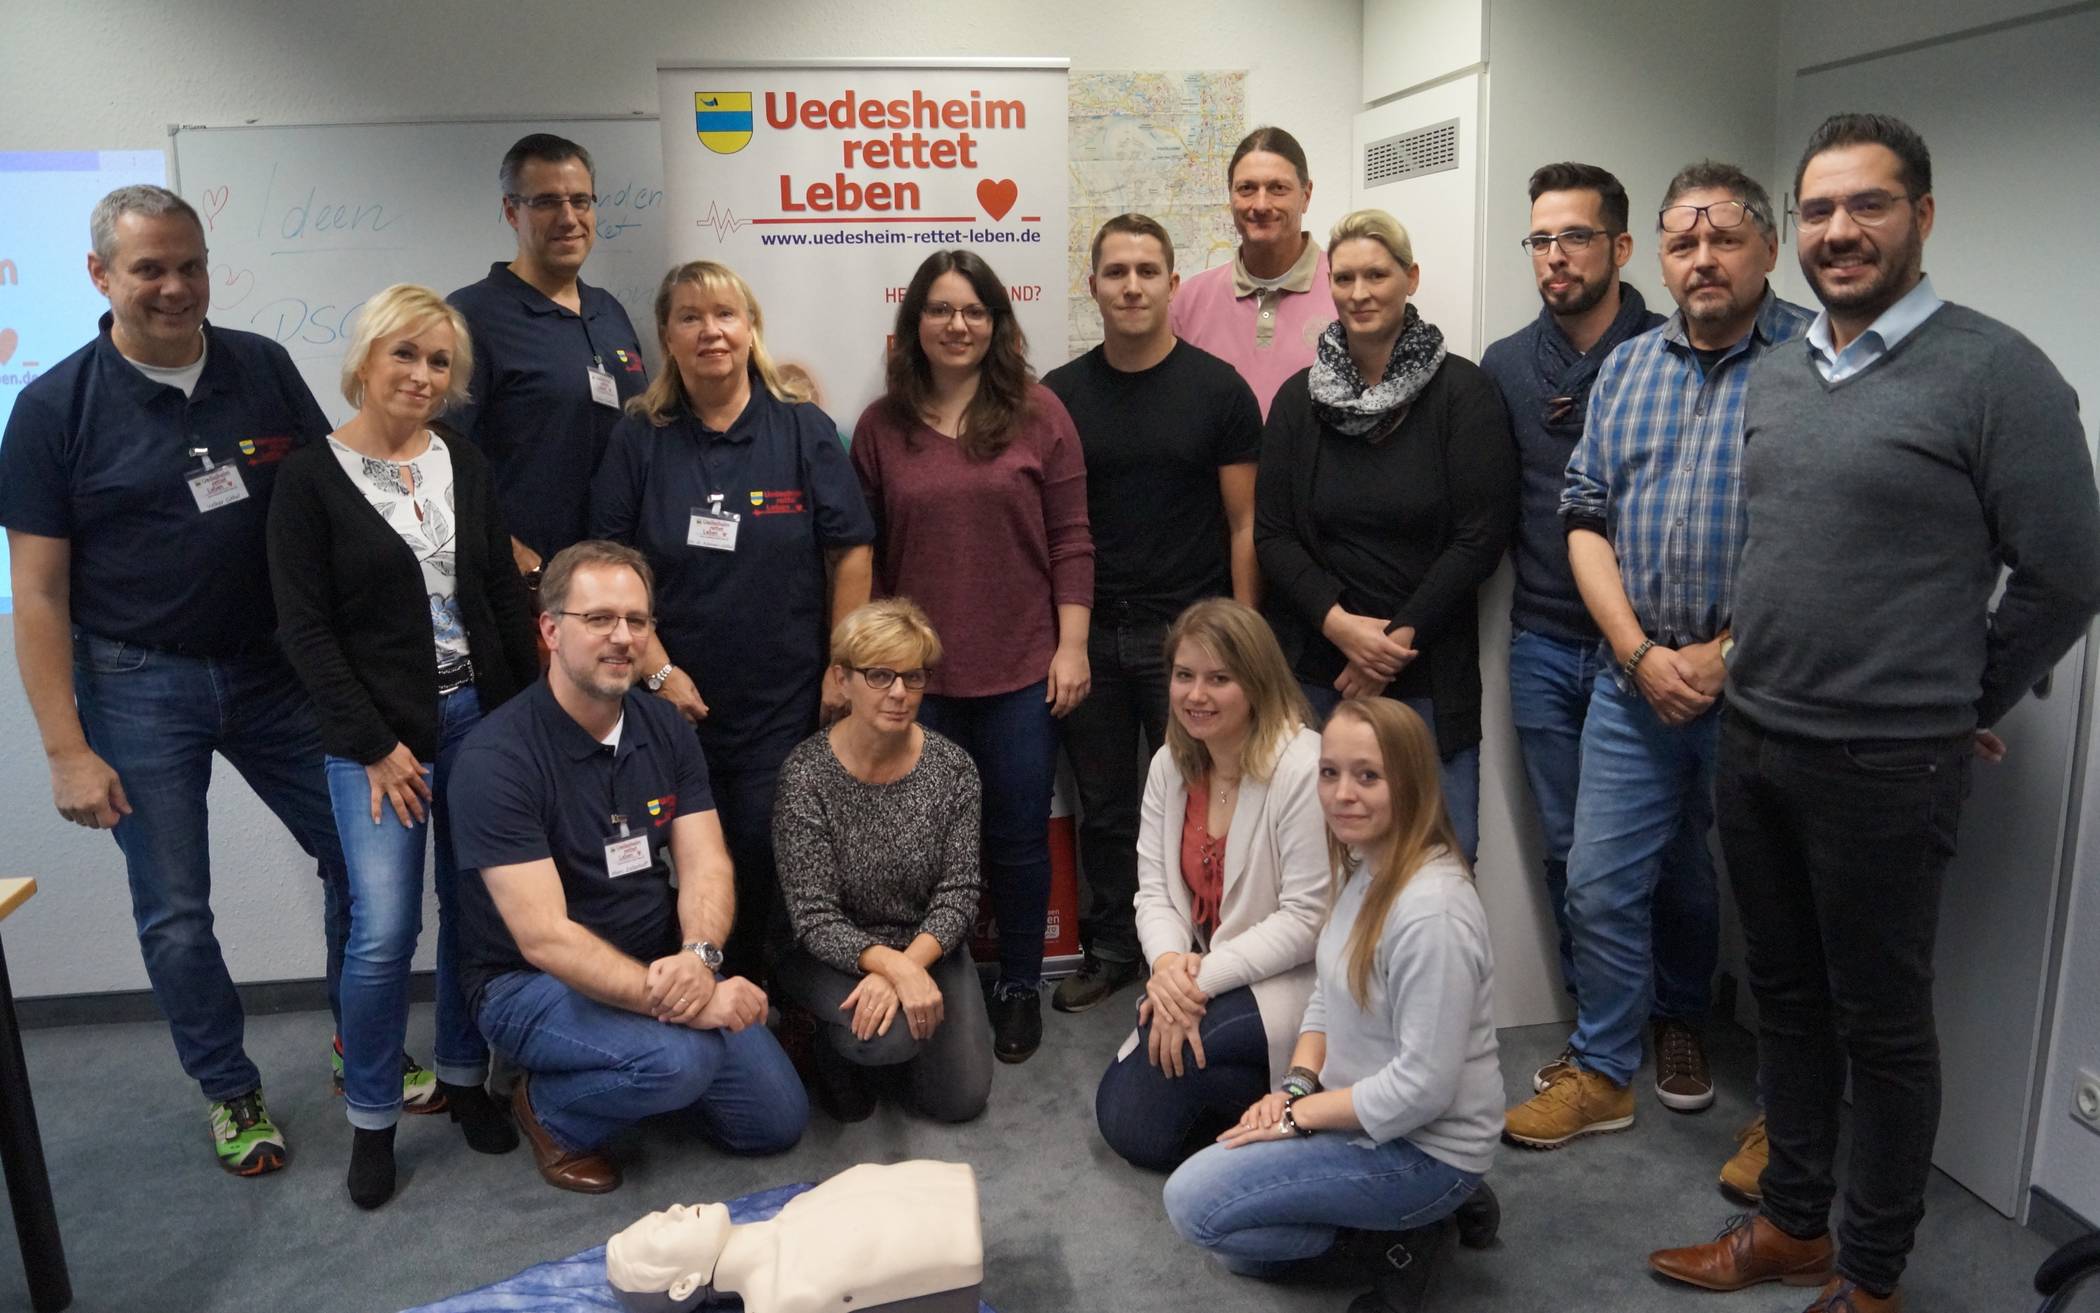  Das ehrenamtliche Team von „Uedesheim rettet Leben“ hat die Mitarbeiter des Stadt-Kuriers in Techniken der Lebensrettung geschult. 